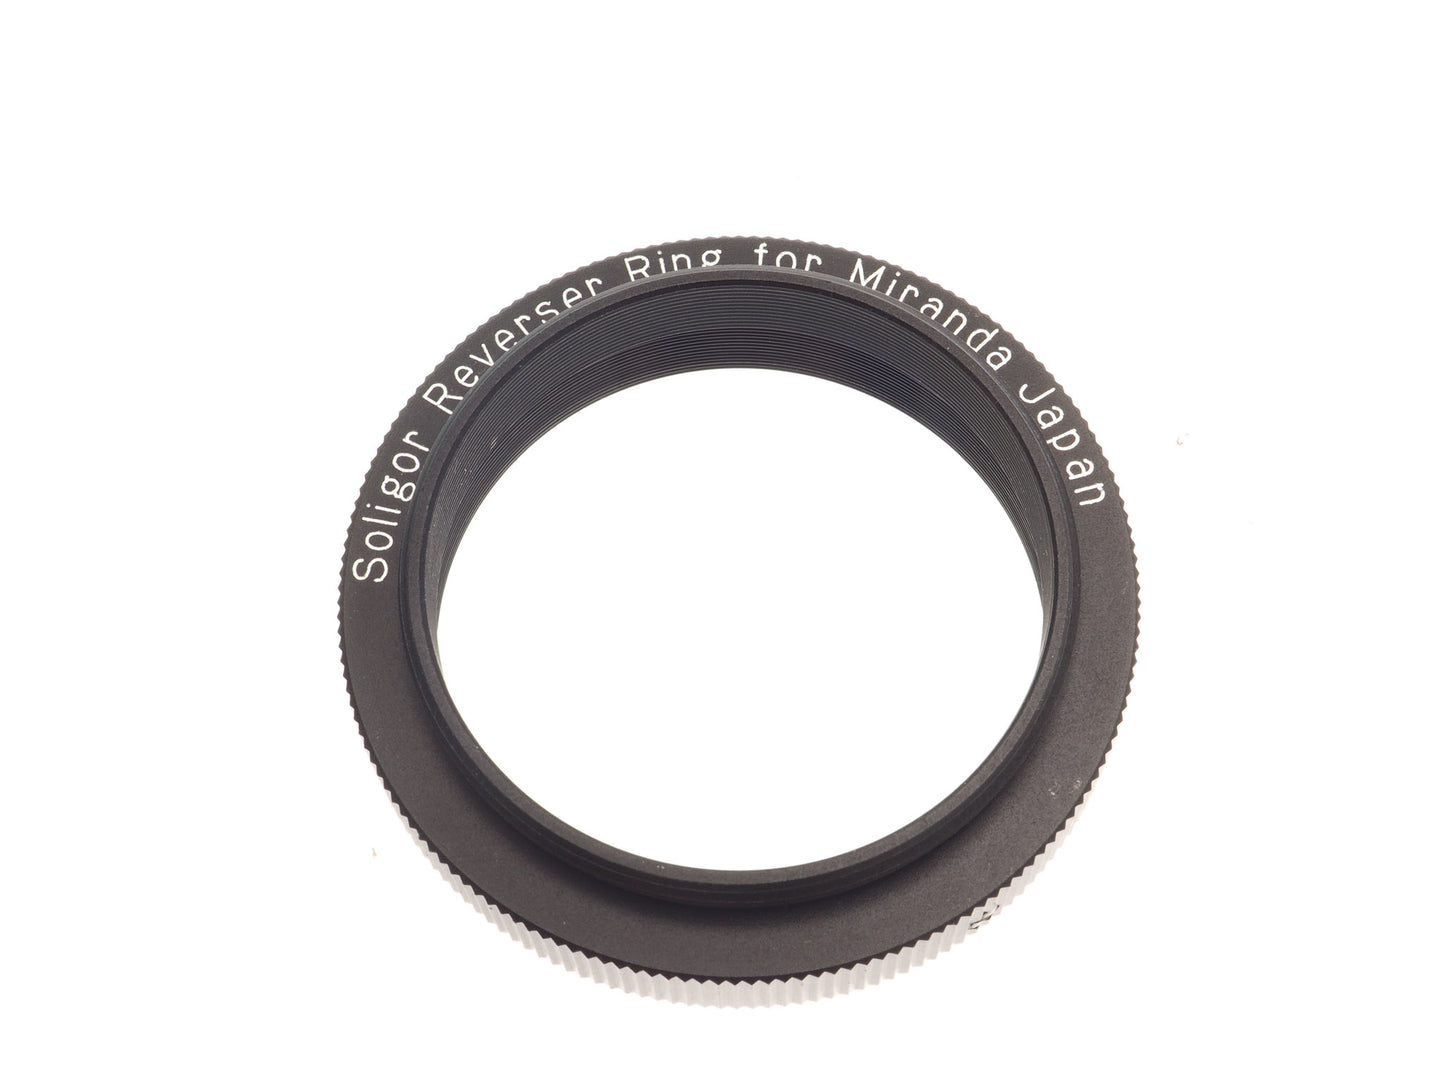 Soligor 46mm Reverser Ring for Miranda - Accessory